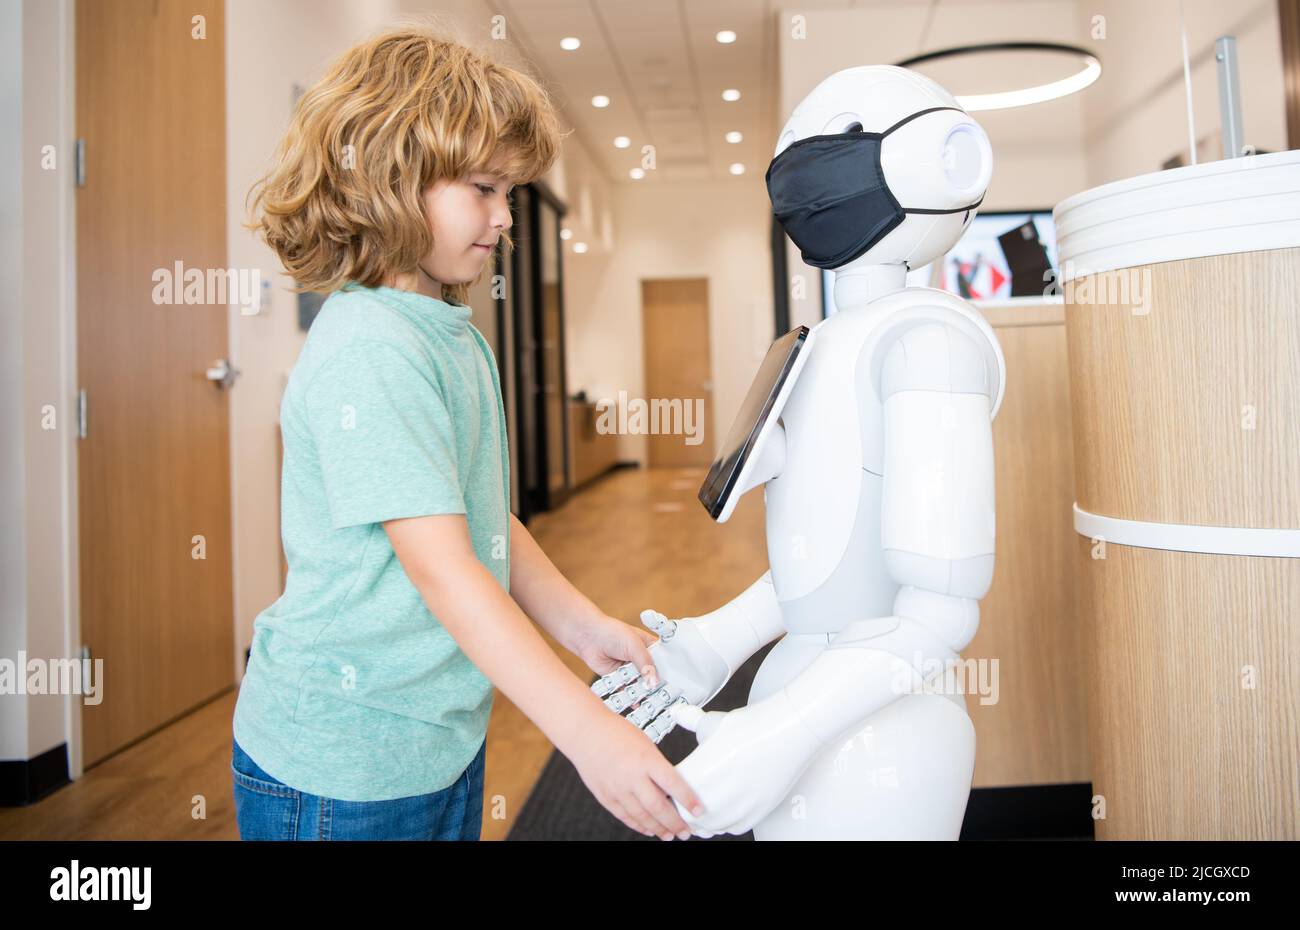 un petit garçon interagit avec le robot comme une technologie innovante, la communication Banque D'Images